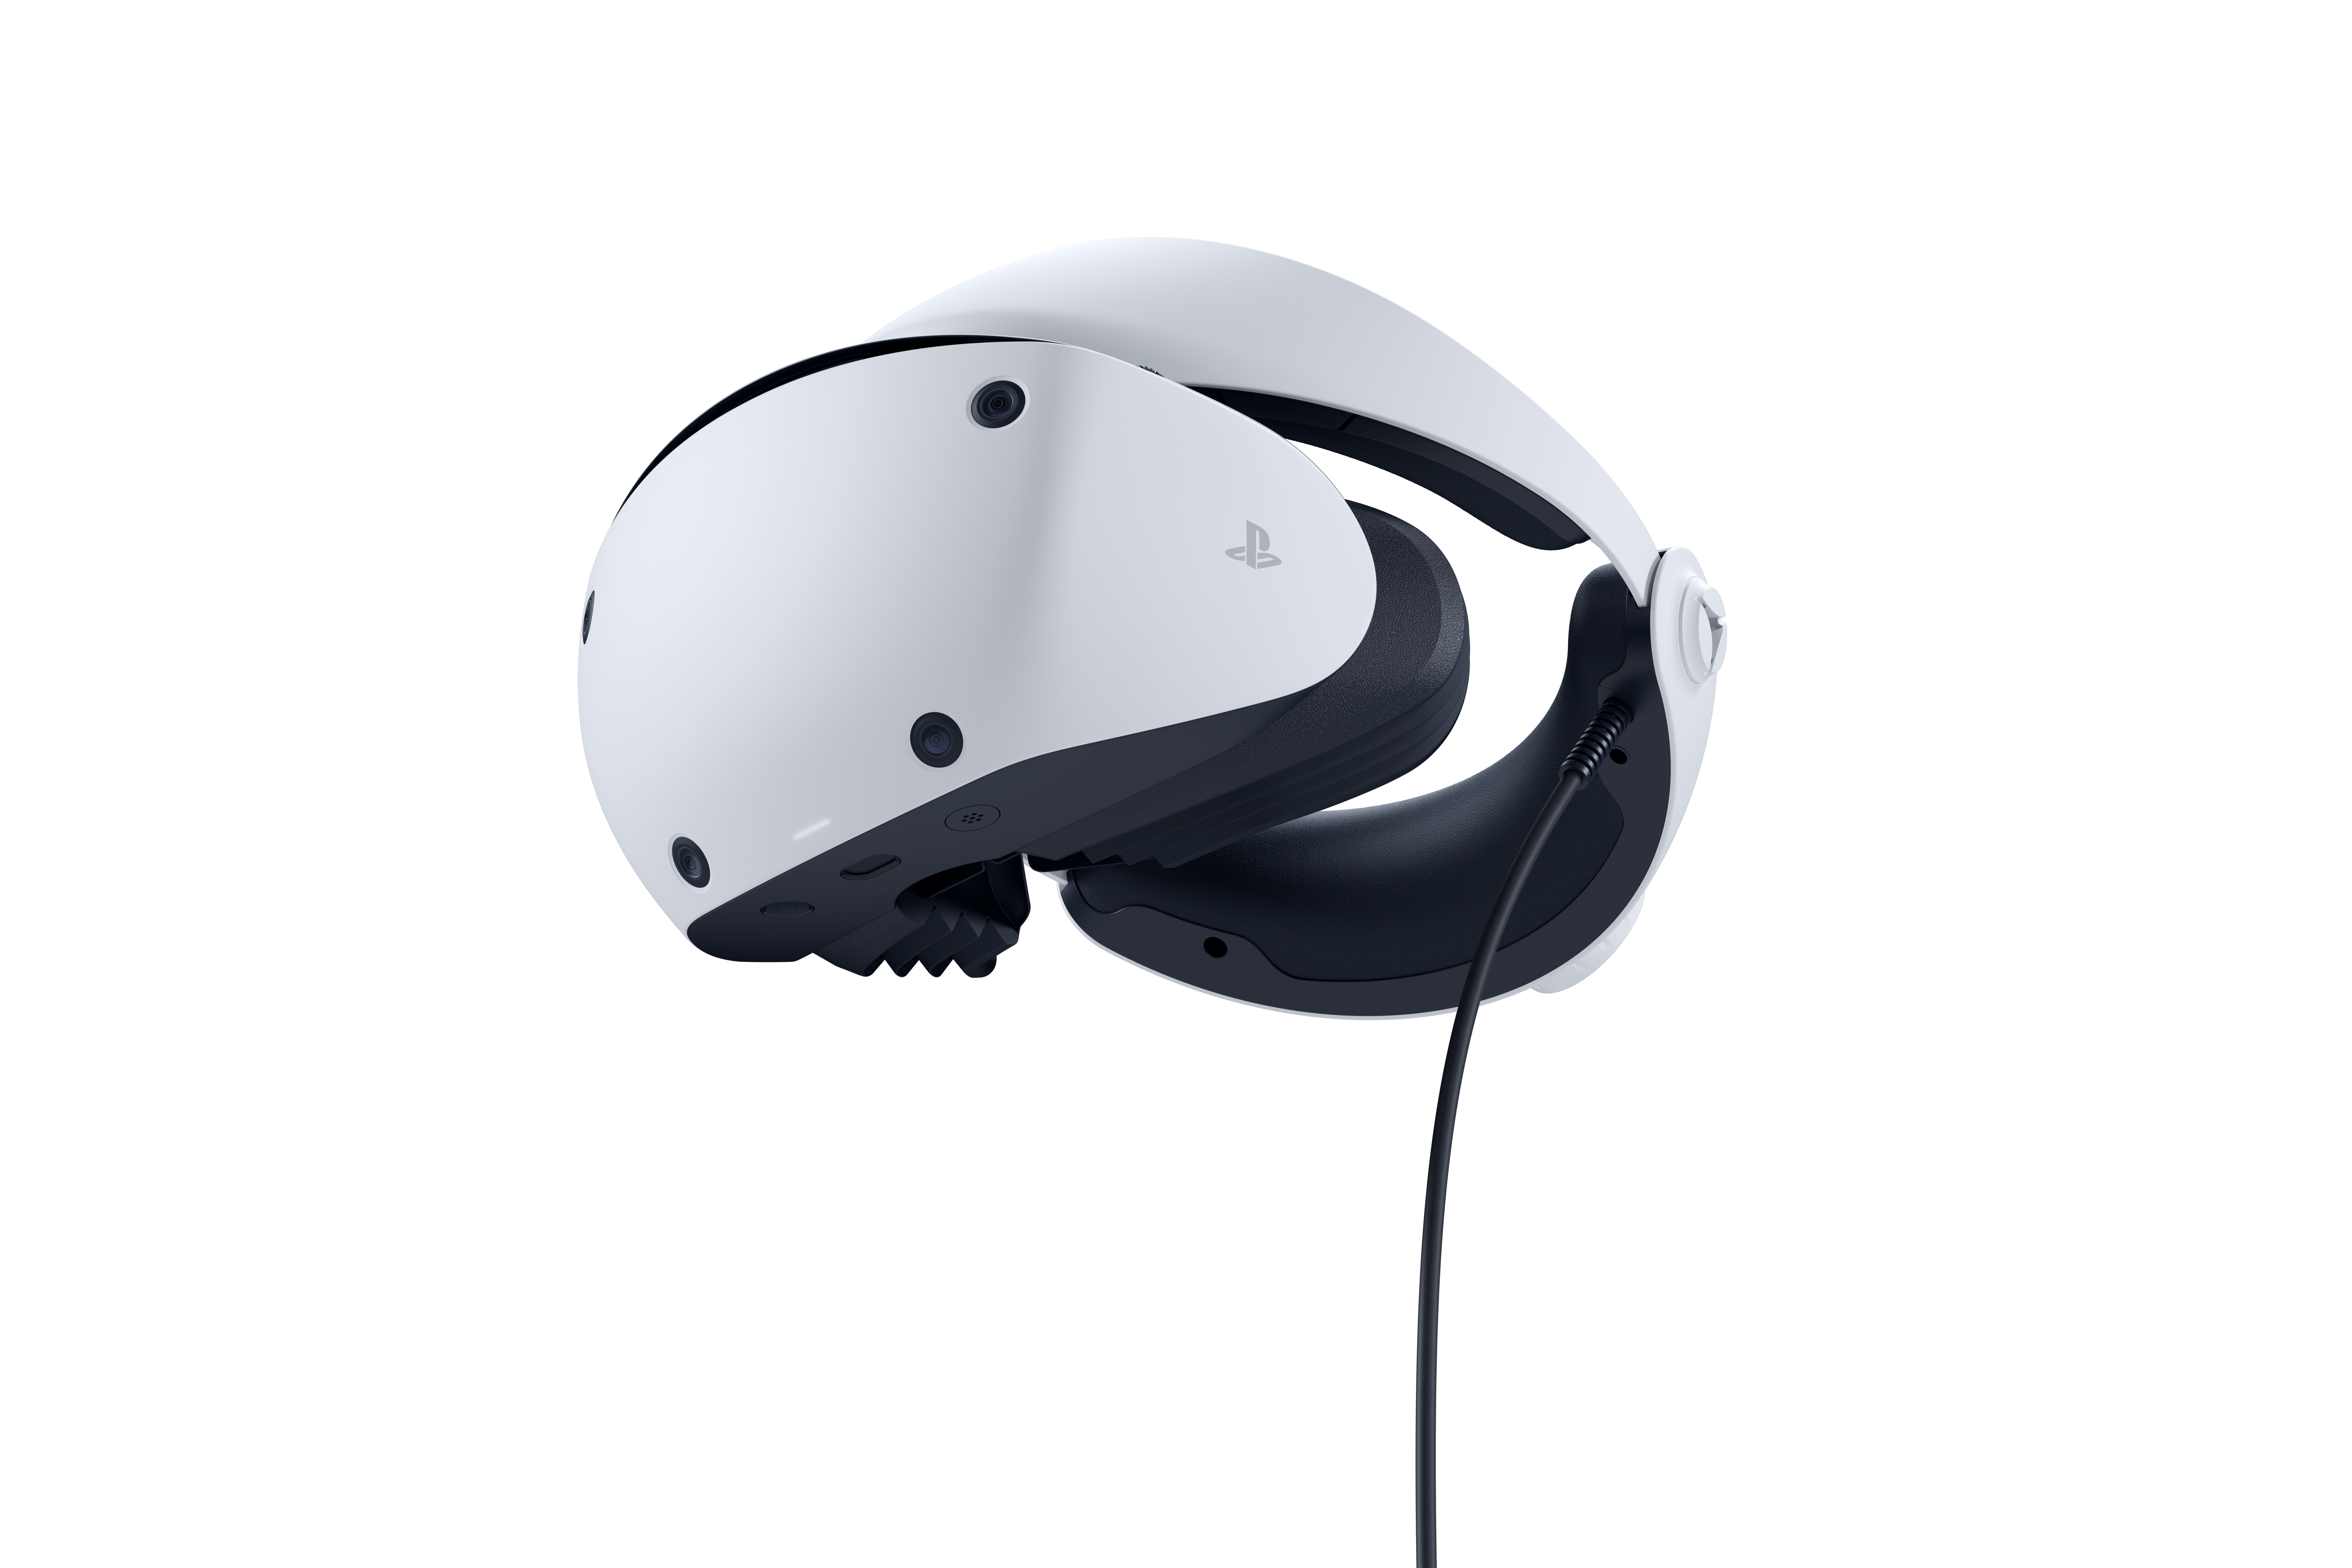 Le casque PS VR2 de la PS5 et ses accessoires sont disponibles